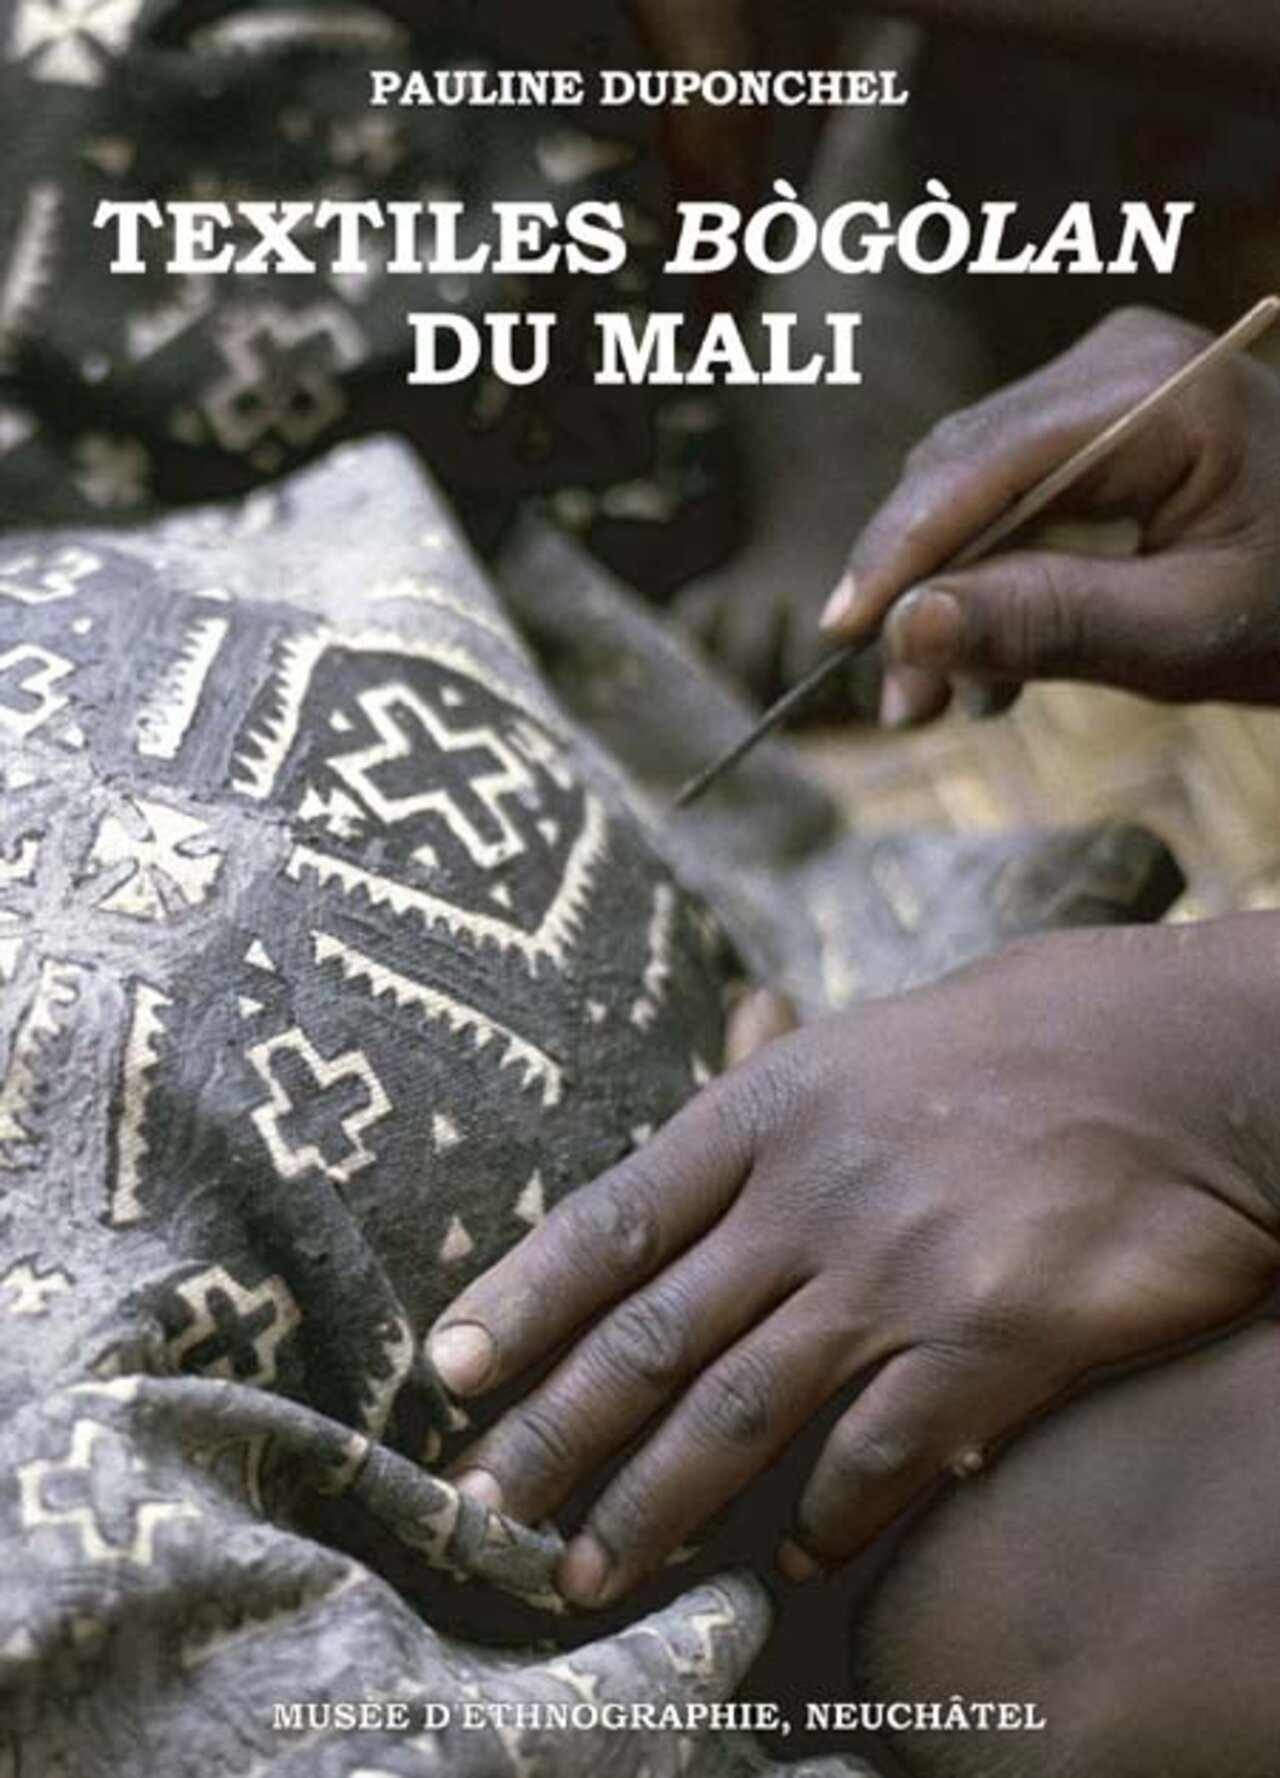 Textiles Bògòlan du Mali